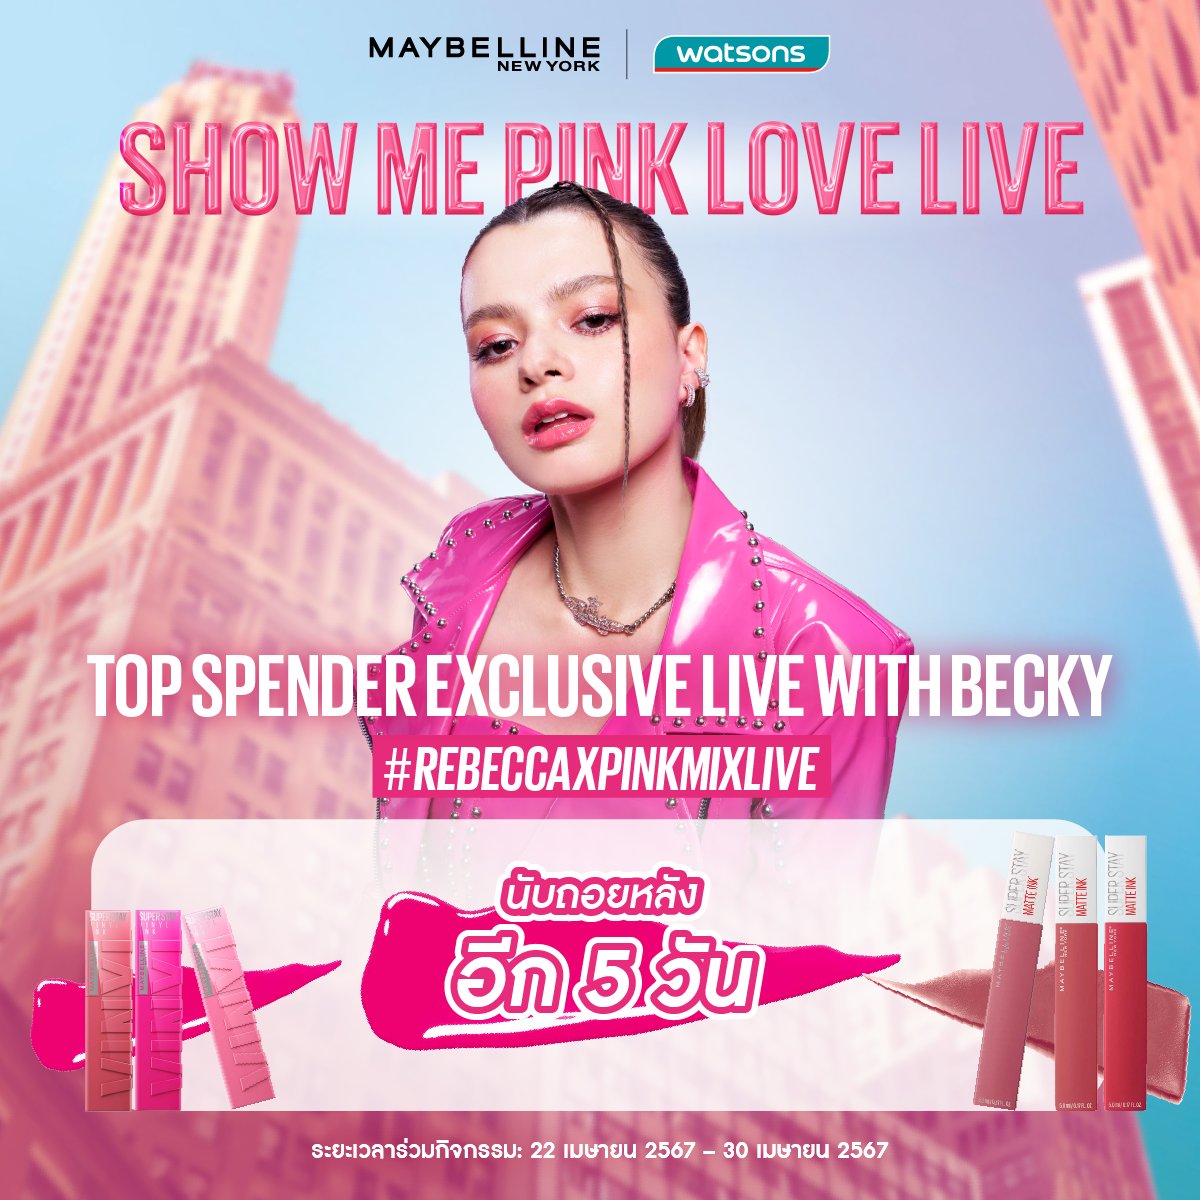 💗นับถอยหลังอีก 5 วัน
💗ลุ้นเป็น 1 ใน 20 Top Spenders กับกิจกรรมสุดเอ็กซ์คลูซีฟ Becky Live

📝กติกาง่ายๆ📝
👉🏻เพียงช้อปลิปรุ่น Superstay (Matte Ink หรือ Vinyl Ink) 
👉🏻1 ใบเสร็จ / 1 สิทธิ์

#REBECCAXPINKMIXLIVE
#MAYBELLINETHAILAND
#SUPERSTAYVINYLINK
#SUPERSTAYMATTEINK